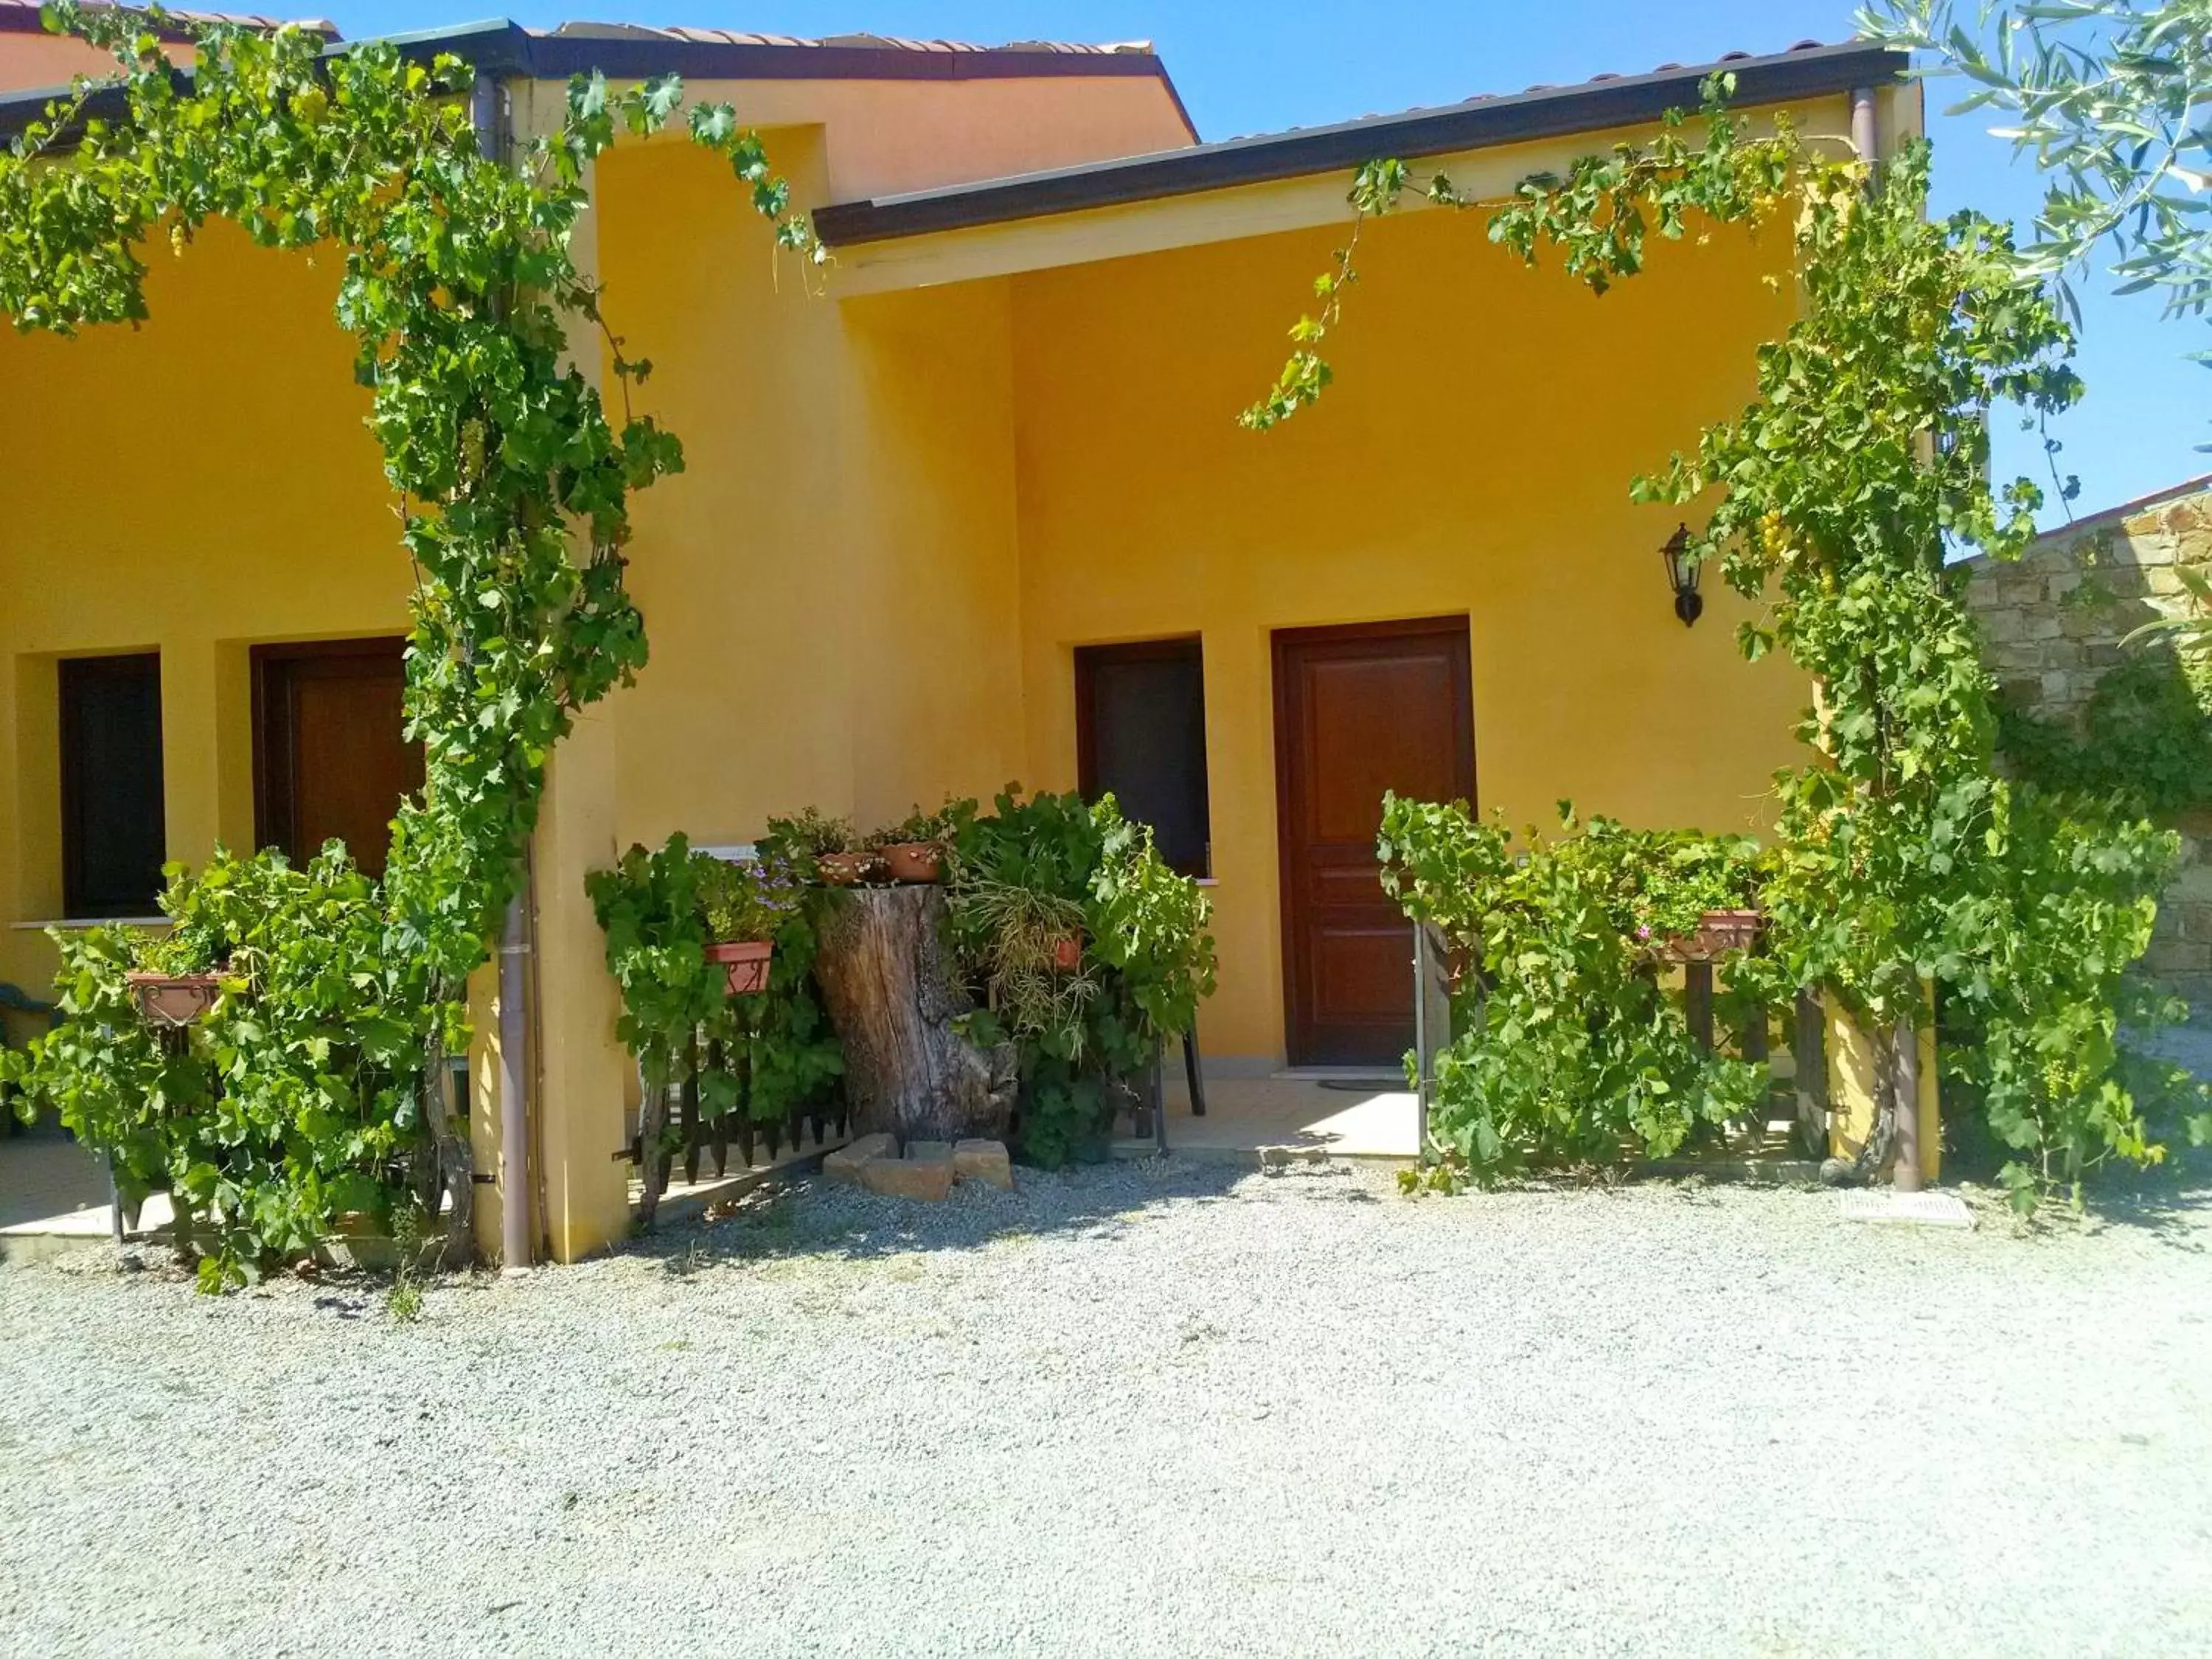 Facade/entrance, Patio/Outdoor Area in Villaggio dei Balocchi